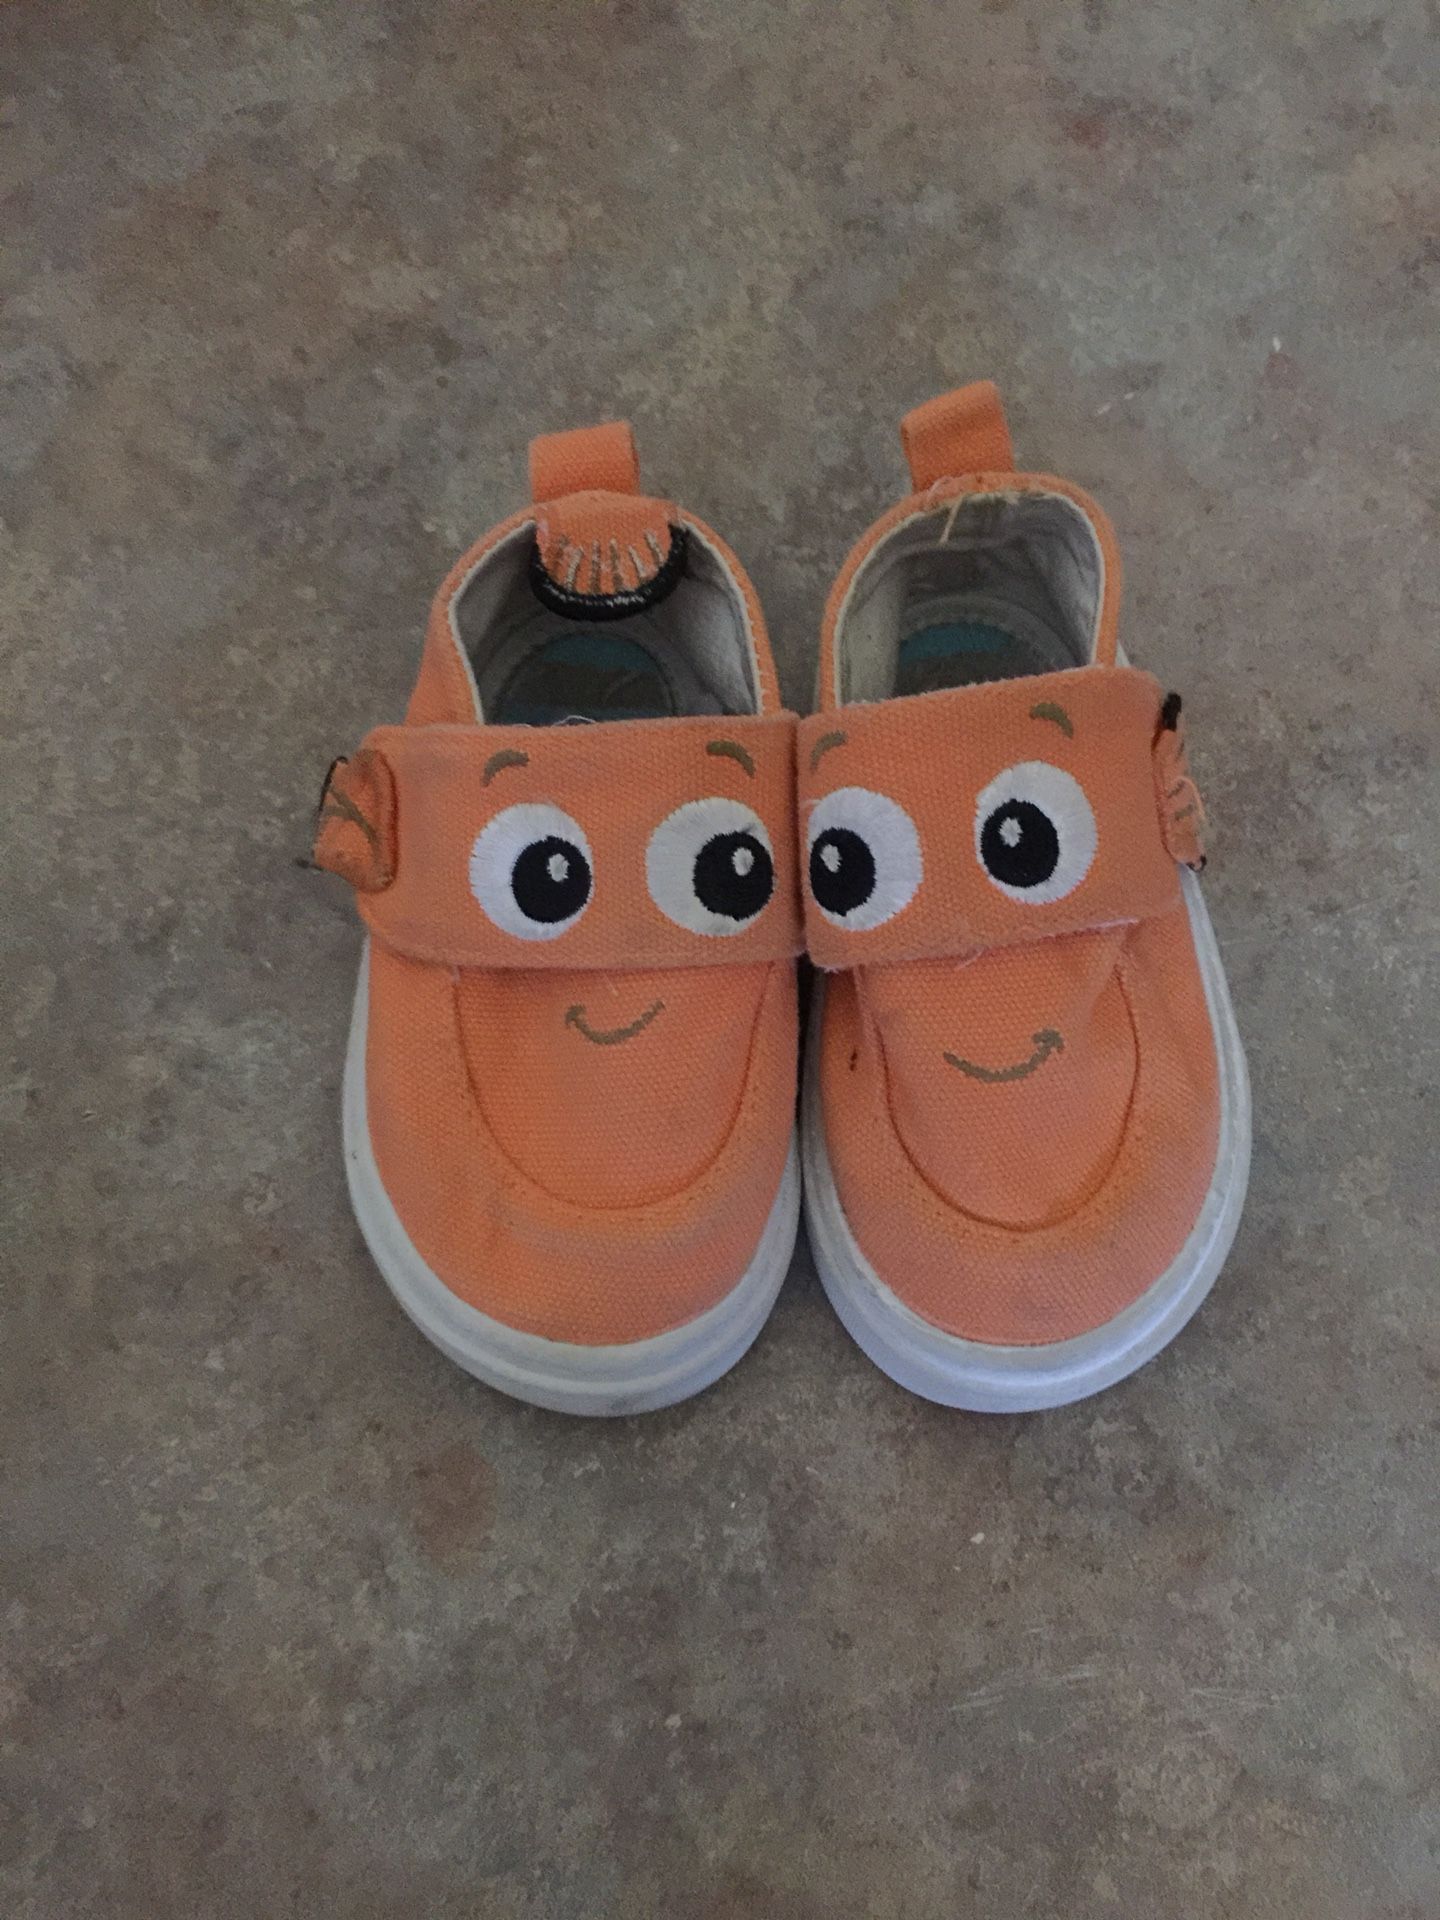 Nemo shoes